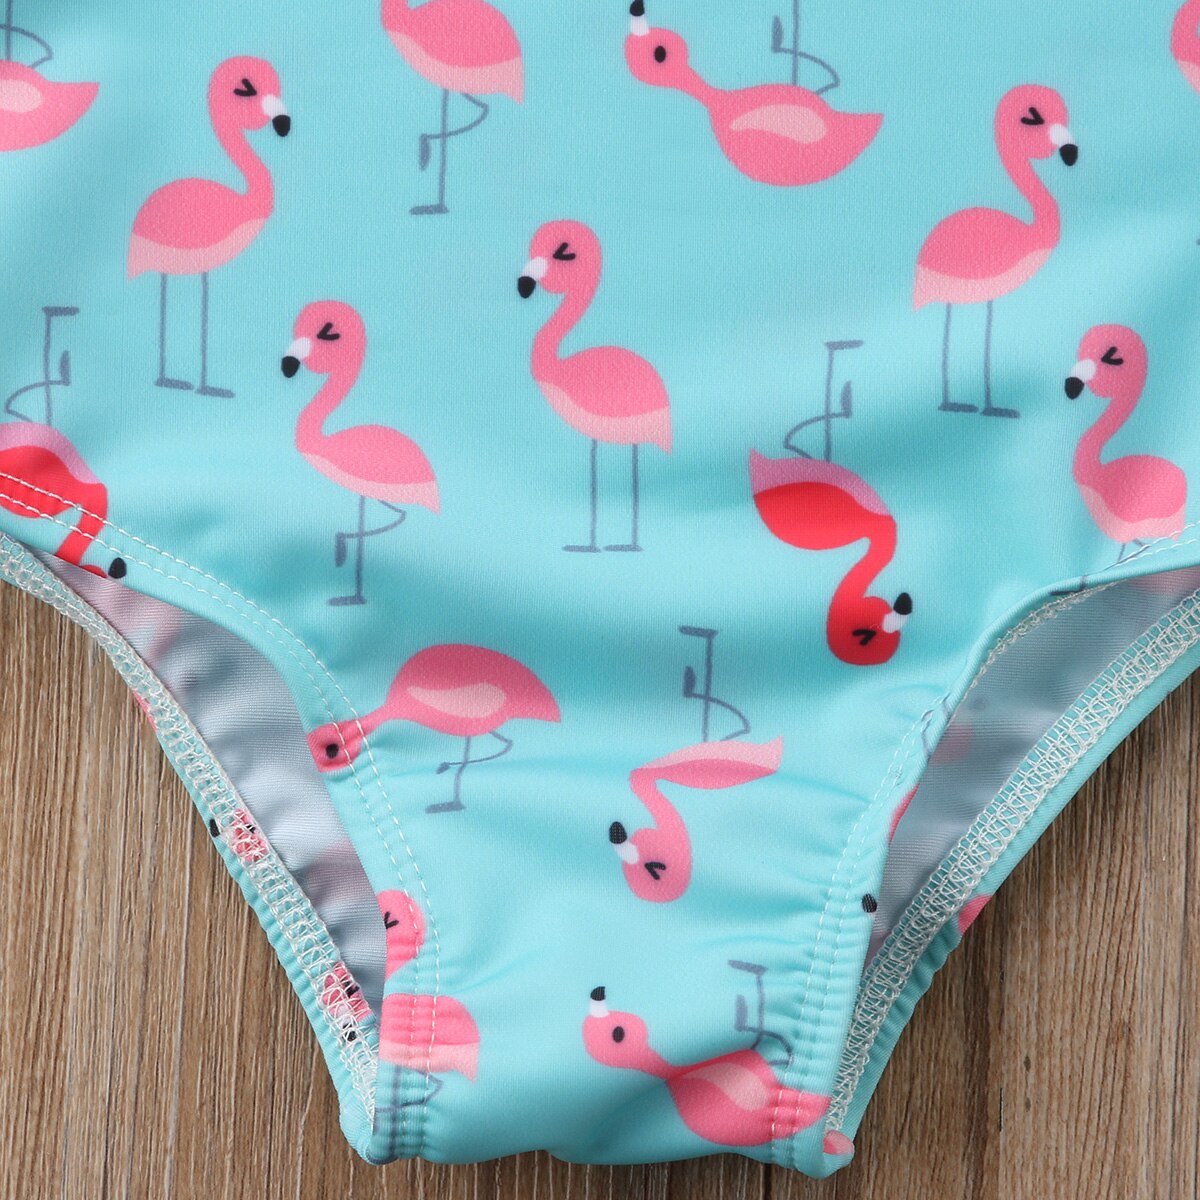 Baby pige børn flamingo badedragt badetøj himmelblå svane tankini bikini badedragt et stykke jakkesæt